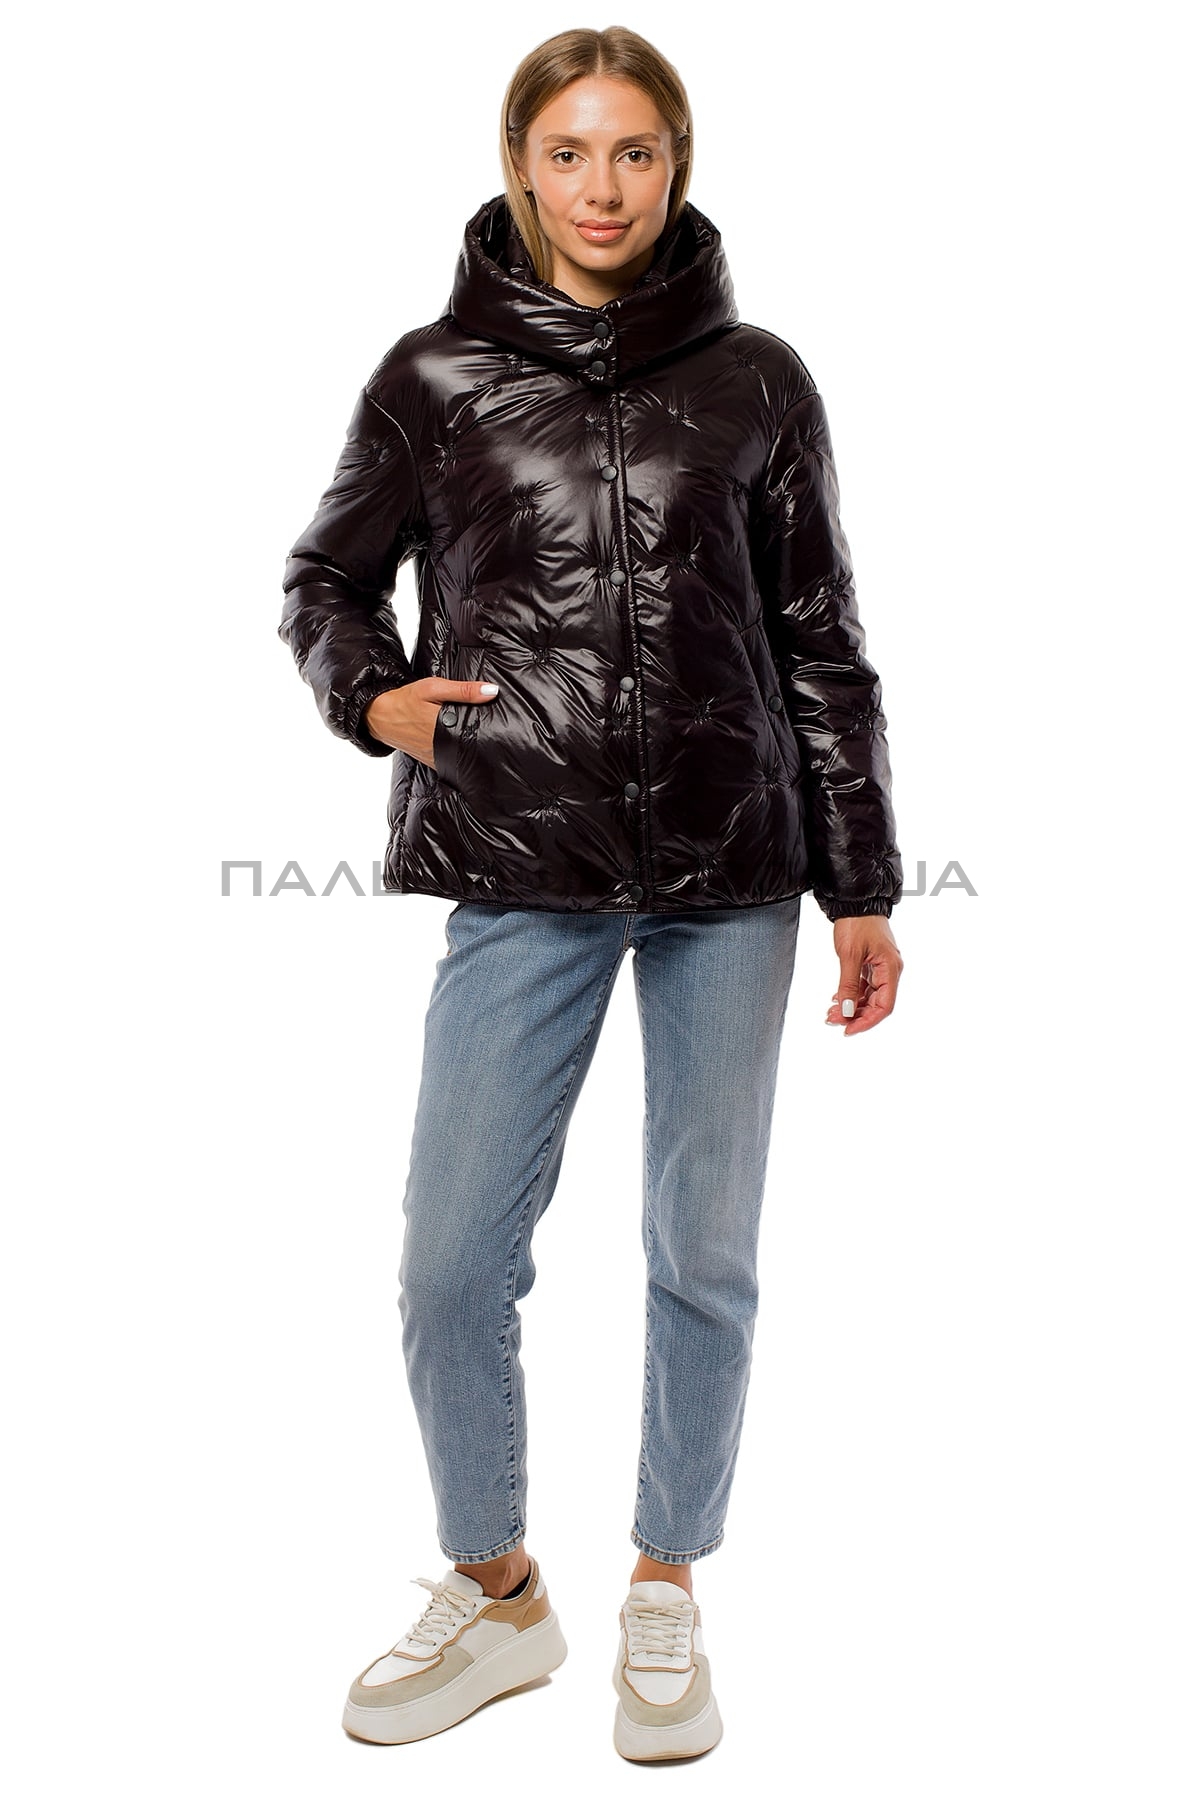  Женкская короткая куртка перламутровая черная